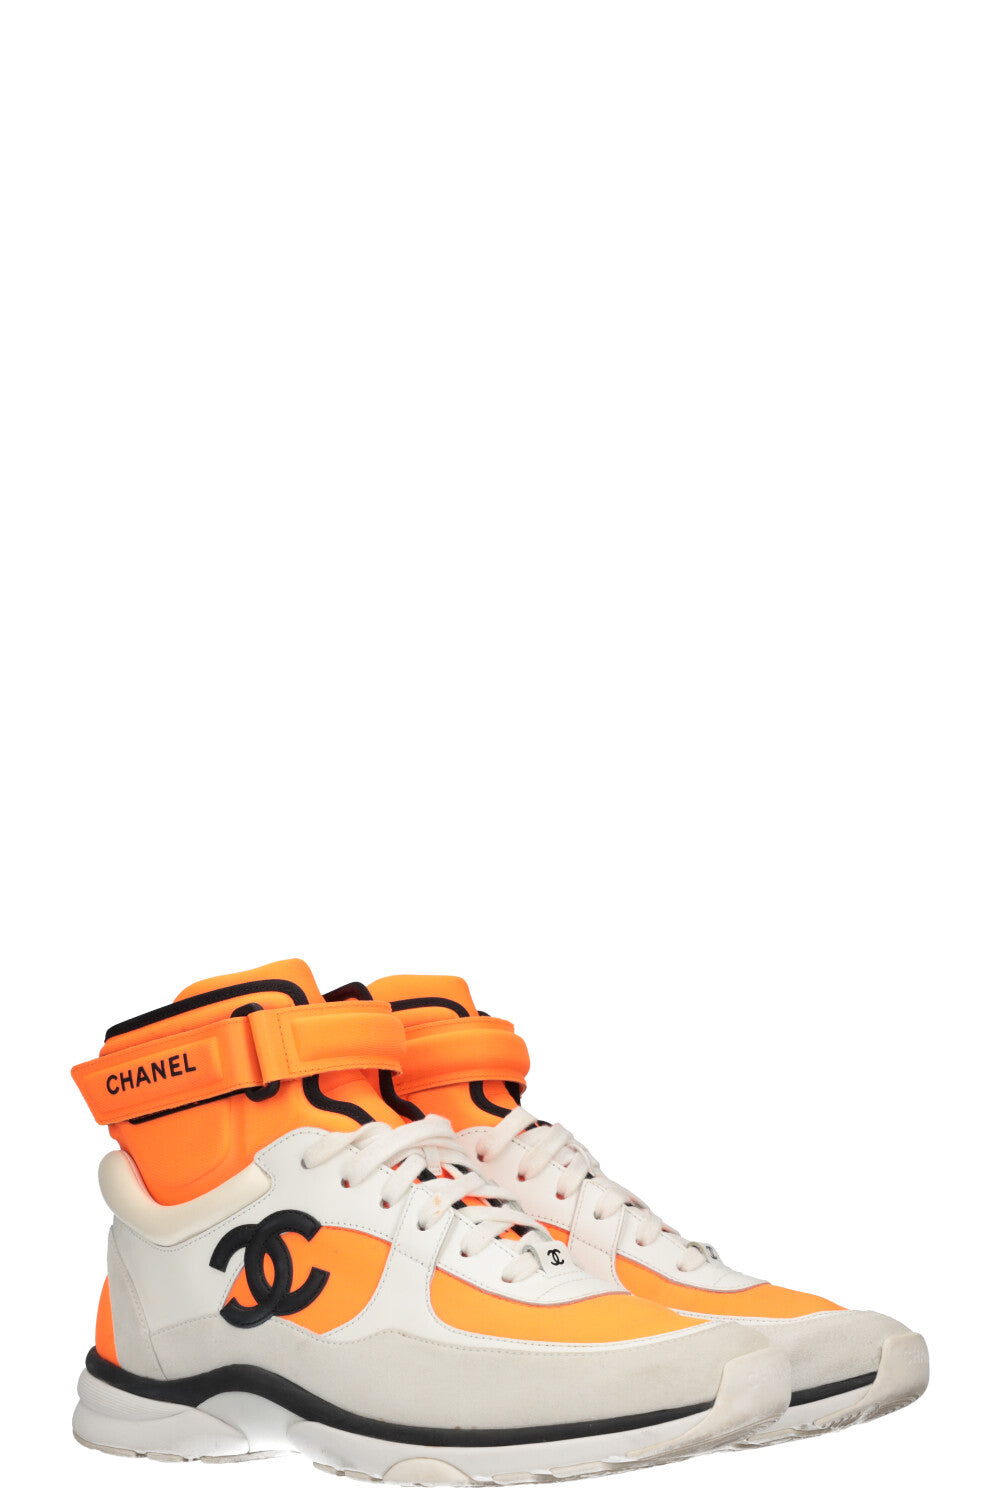 Chanel High-Top Sneakers Neon Orange